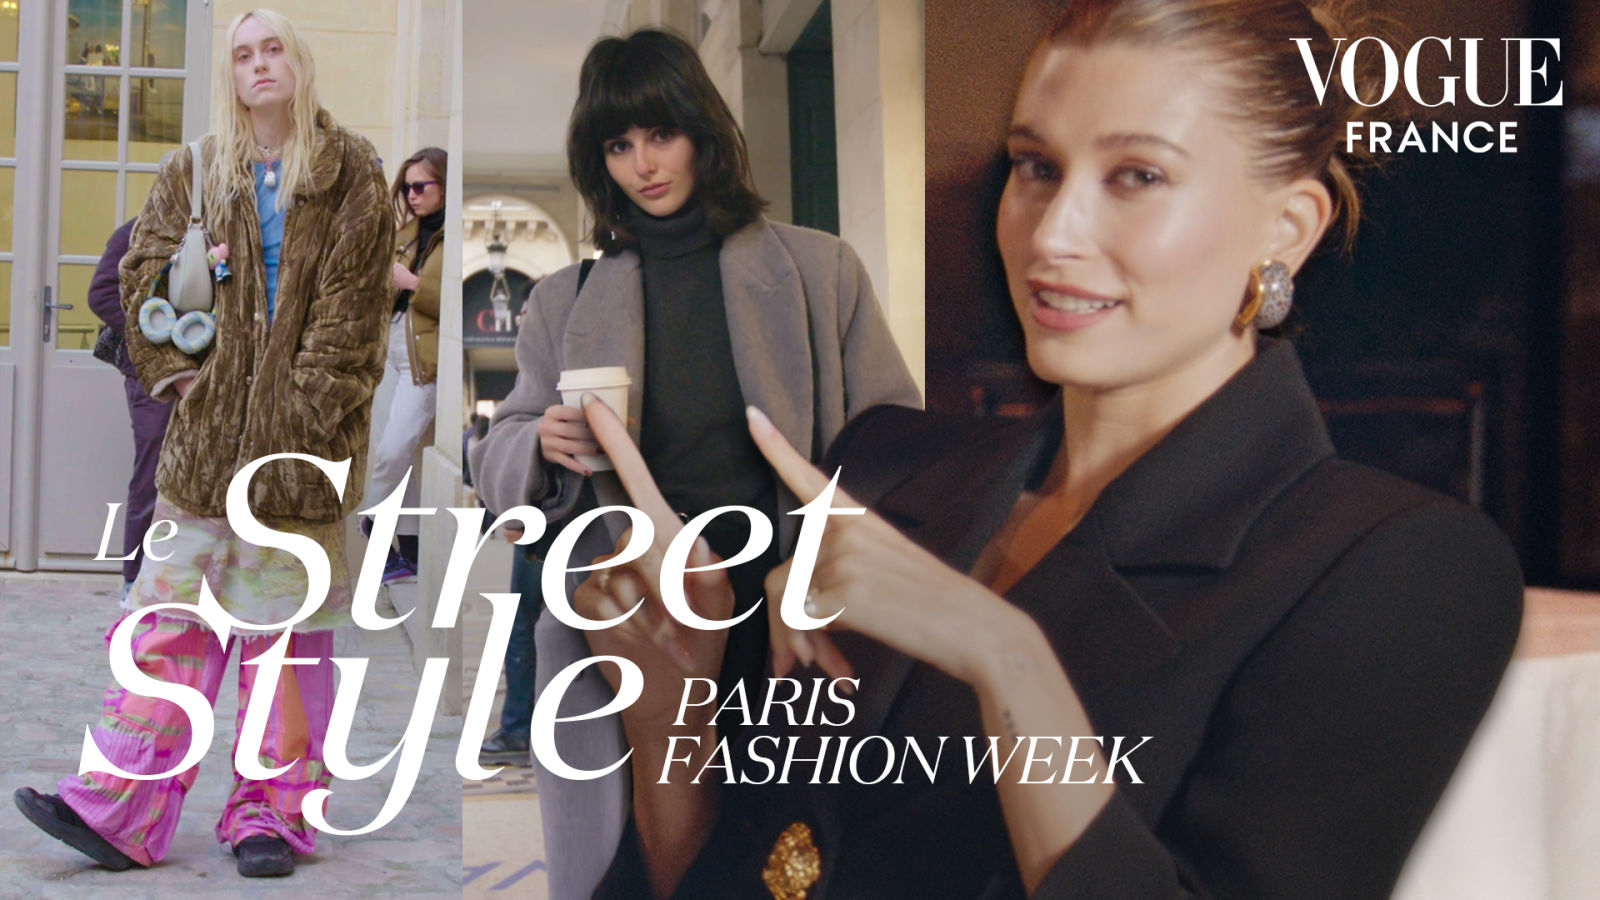 Hailey Bieber décrypte les looks parisiens de la Fashion Week | LE STREET STYLE #6